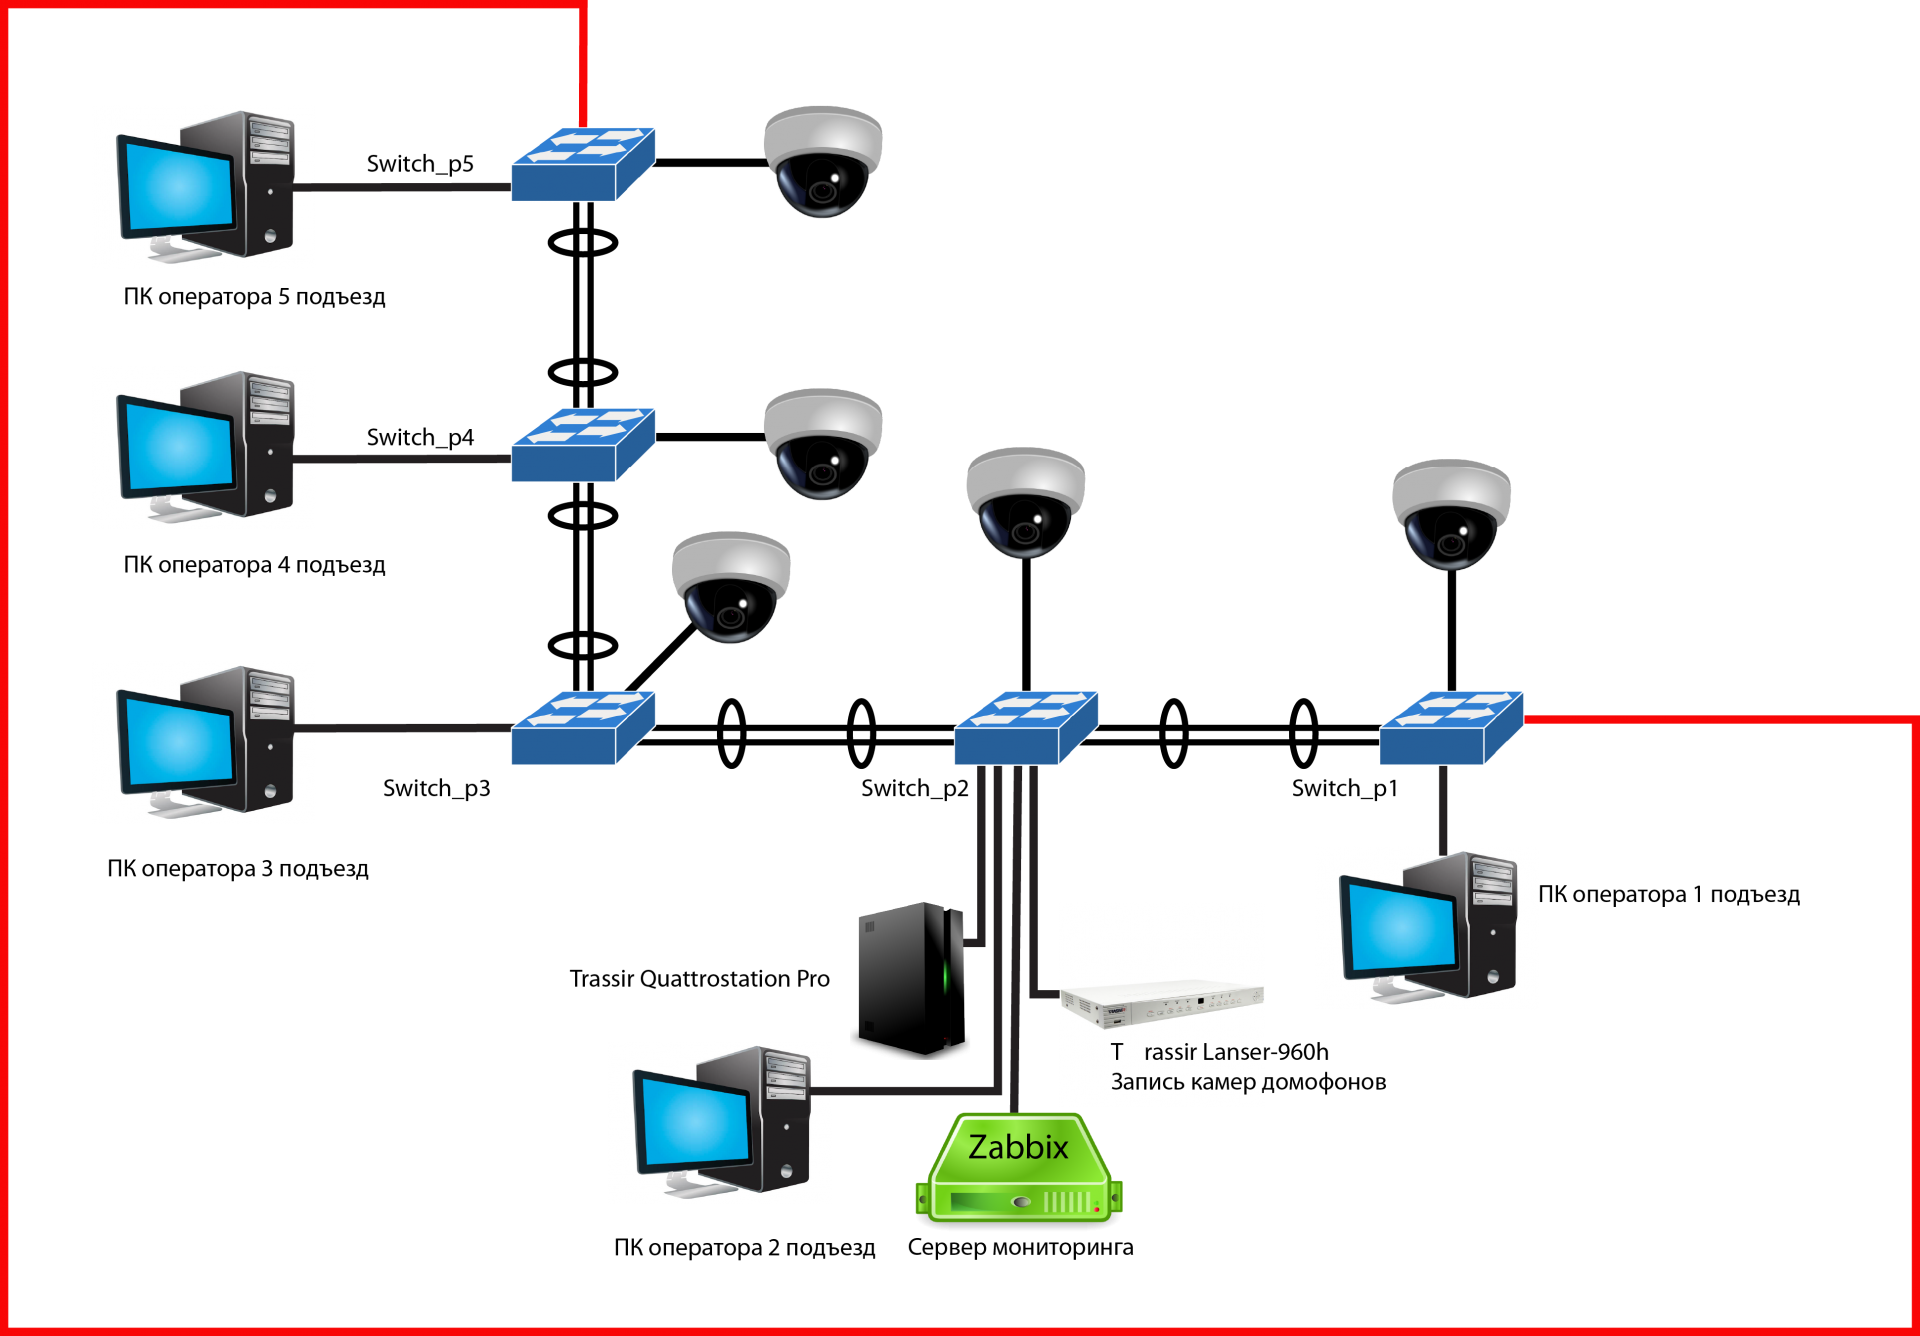 Соединение ip сетей. Система видеонаблюдения TRASSIR схема. Структурная схема камеры видеонаблюдения. Схема подключения системы видеонаблюдения. Электрическая схема системы видеонаблюдения.